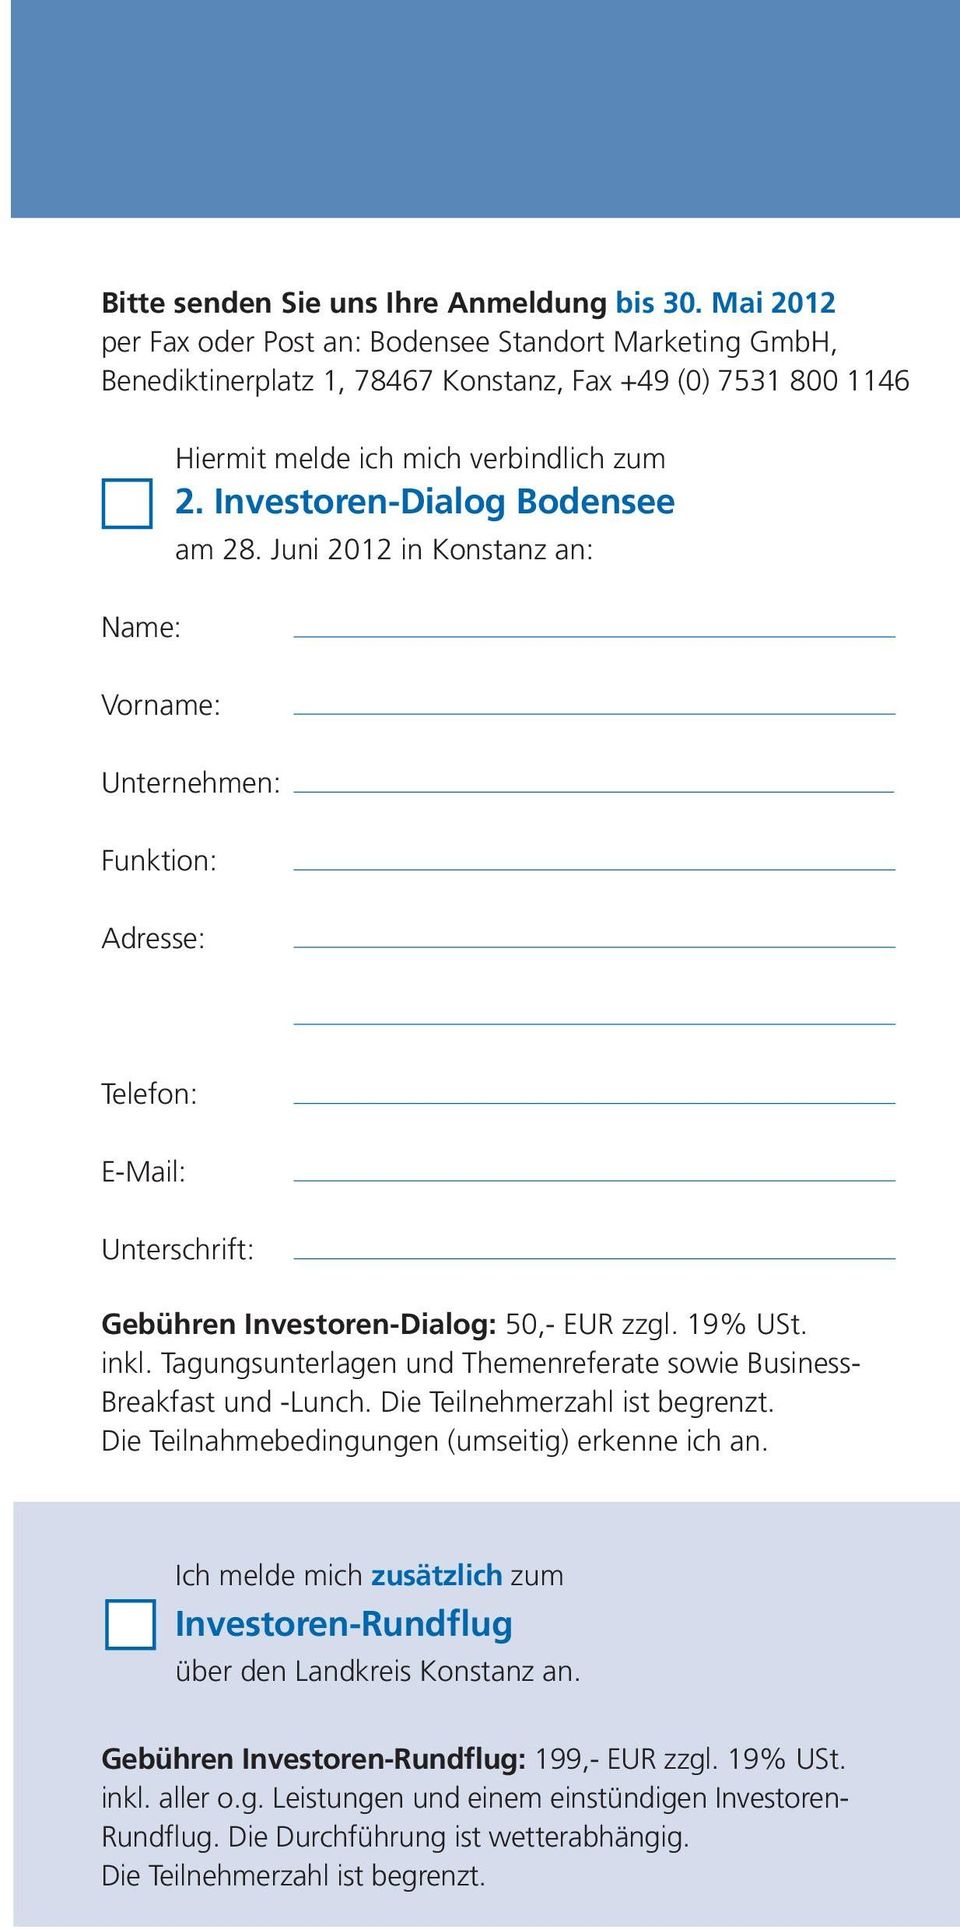 Investoren-Dialog Bodensee am 28. Juni 2012 in Konstanz an: Vorname: Unternehmen: Funktion: Adresse: Telefon: E-Mail: Unterschrift: Gebühren Investoren-Dialog: 50,- EUR zzgl. 19% USt. inkl.